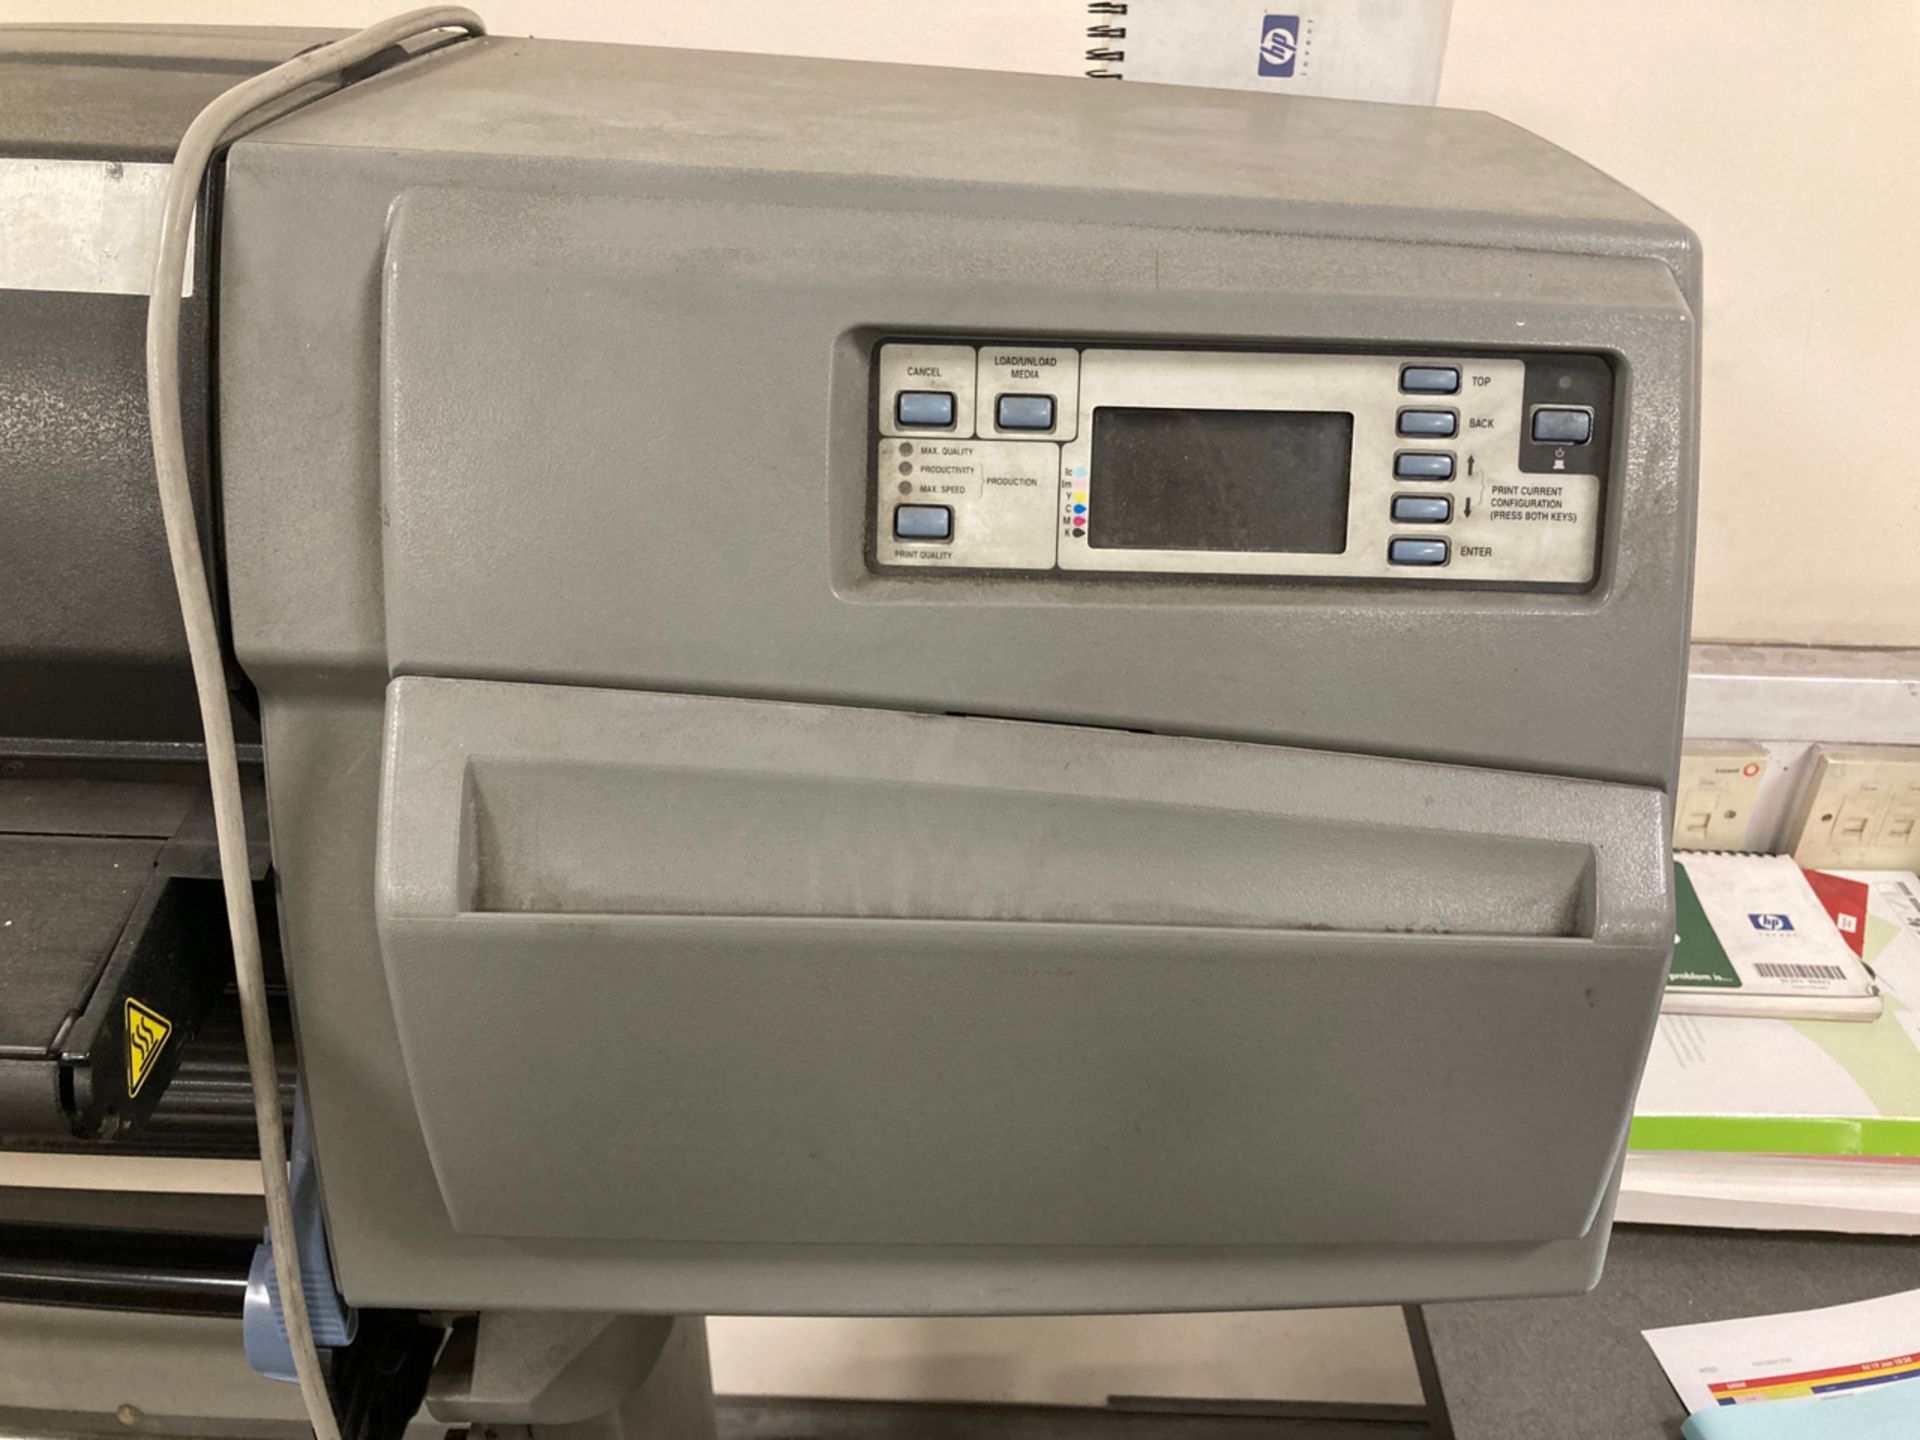 HP Designjet 5500 Printer - Image 2 of 4